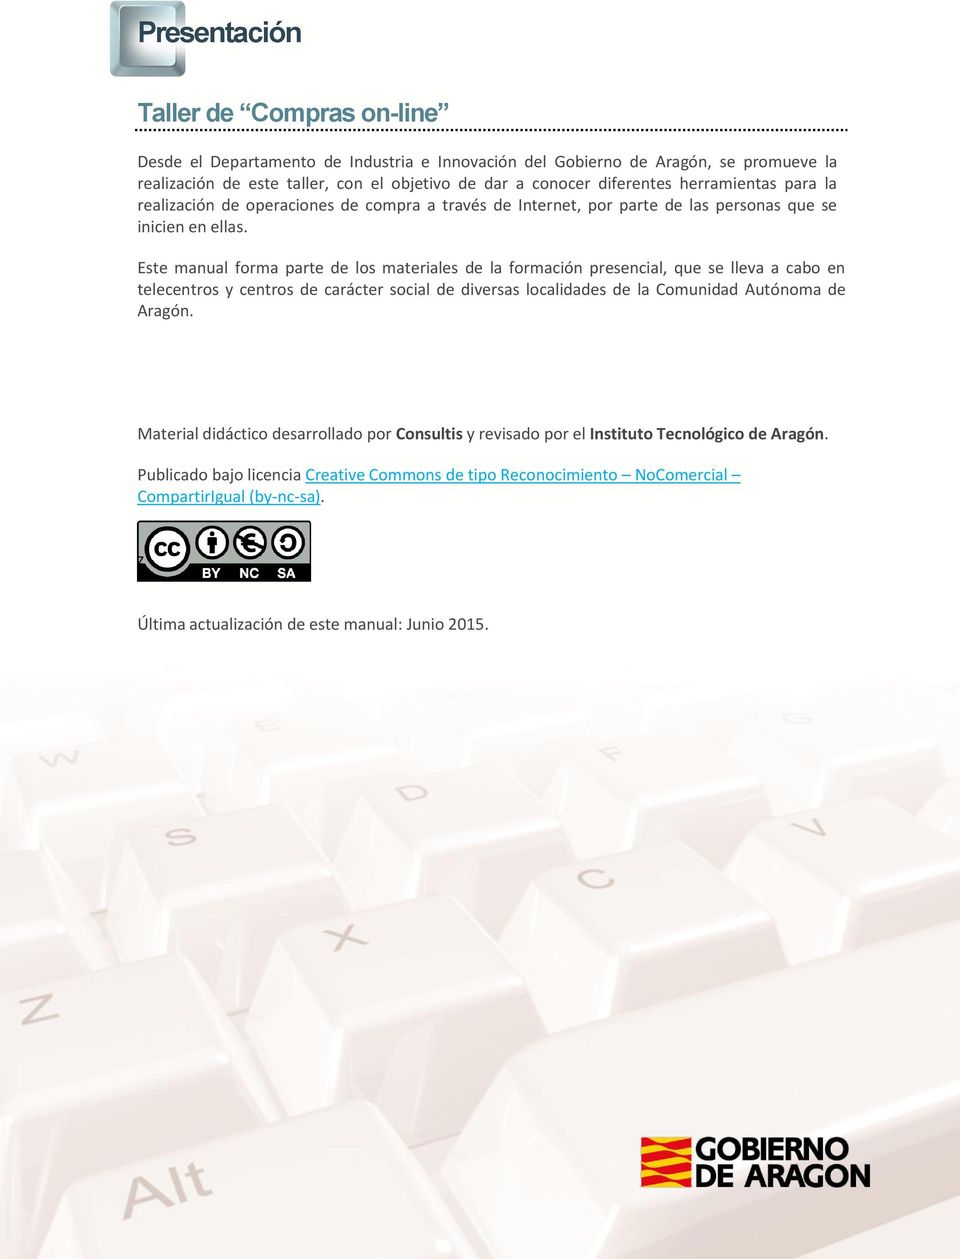 Este manual forma parte de los materiales de la formación presencial, que se lleva a cabo en telecentros y centros de carácter social de diversas localidades de la Comunidad Autónoma de Aragón.